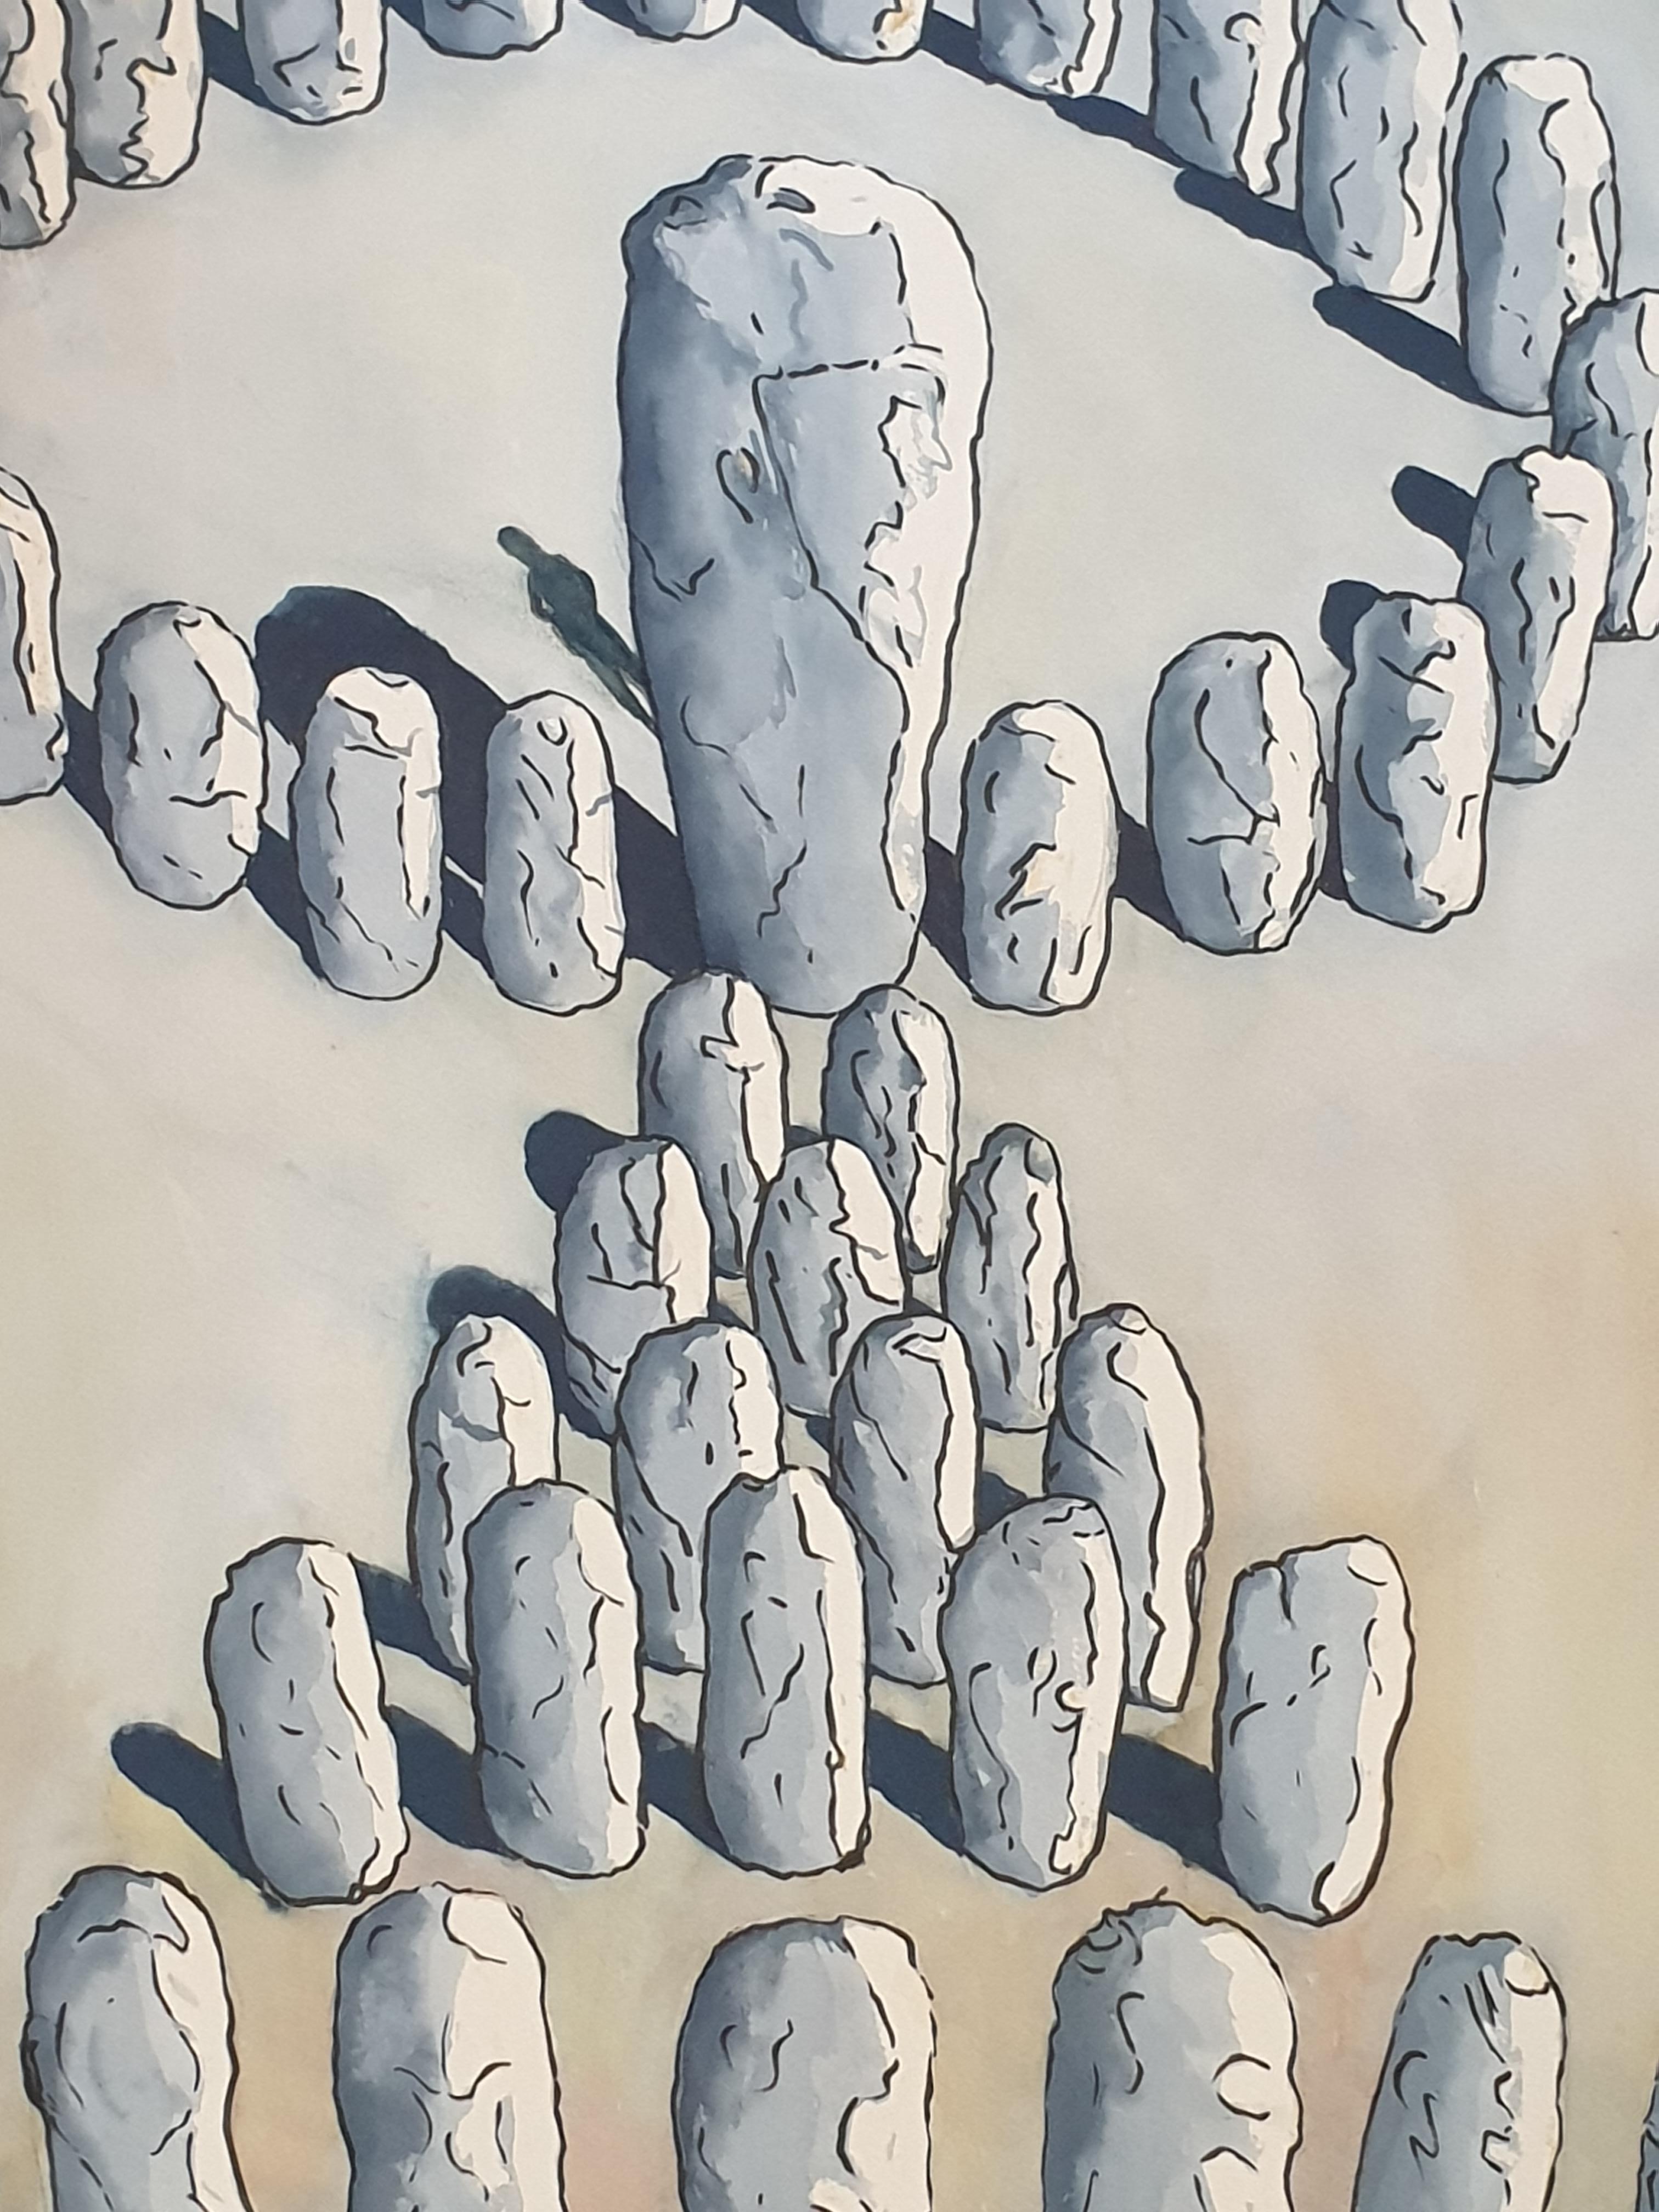 Acrylique surréaliste sur papier de l'artiste britannique Derek Carruthers. Initiale signée DC en bas à droite et signée, datée et titrée '43 Stones' au verso.

Une peinture intrigante et graphique d'une structure semblable à Stonehenge.